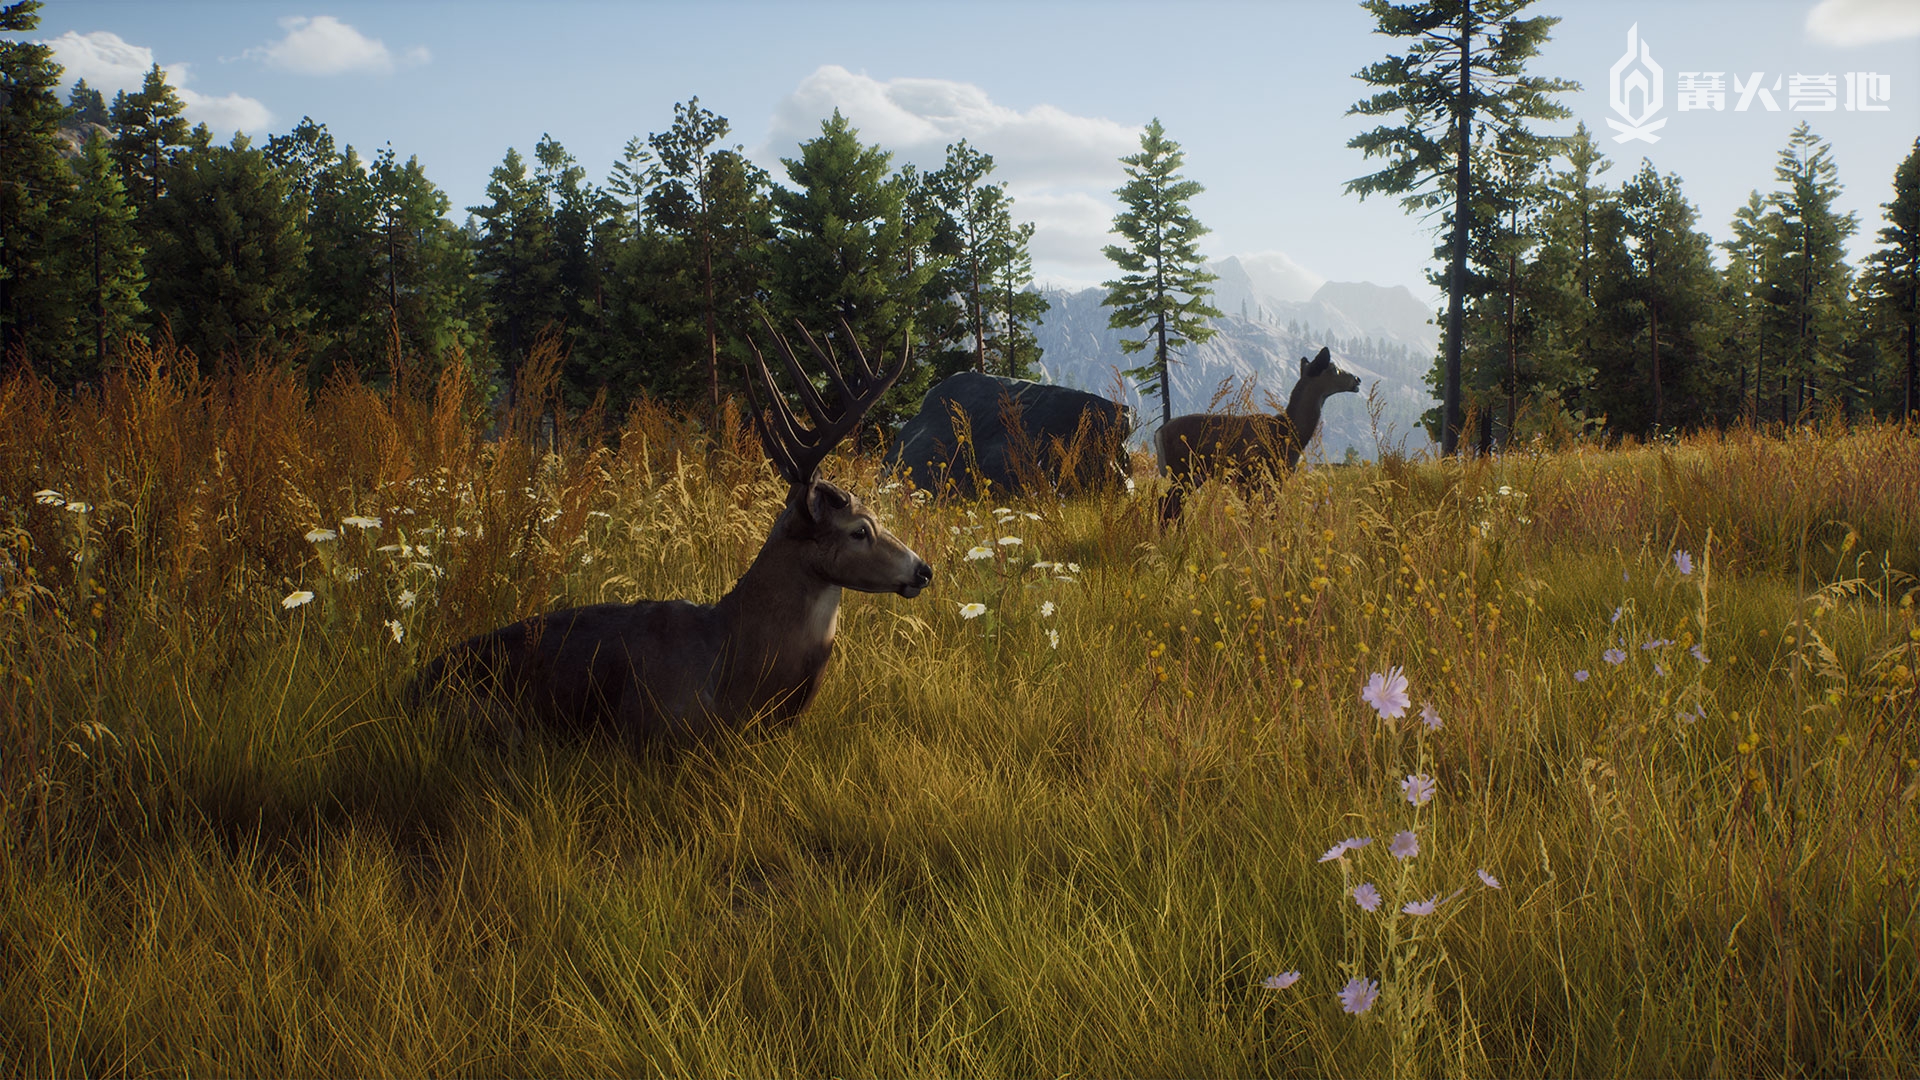 开放世界狩猎游戏《猎人之路》8 月登陆 PS5/SXS/Steam